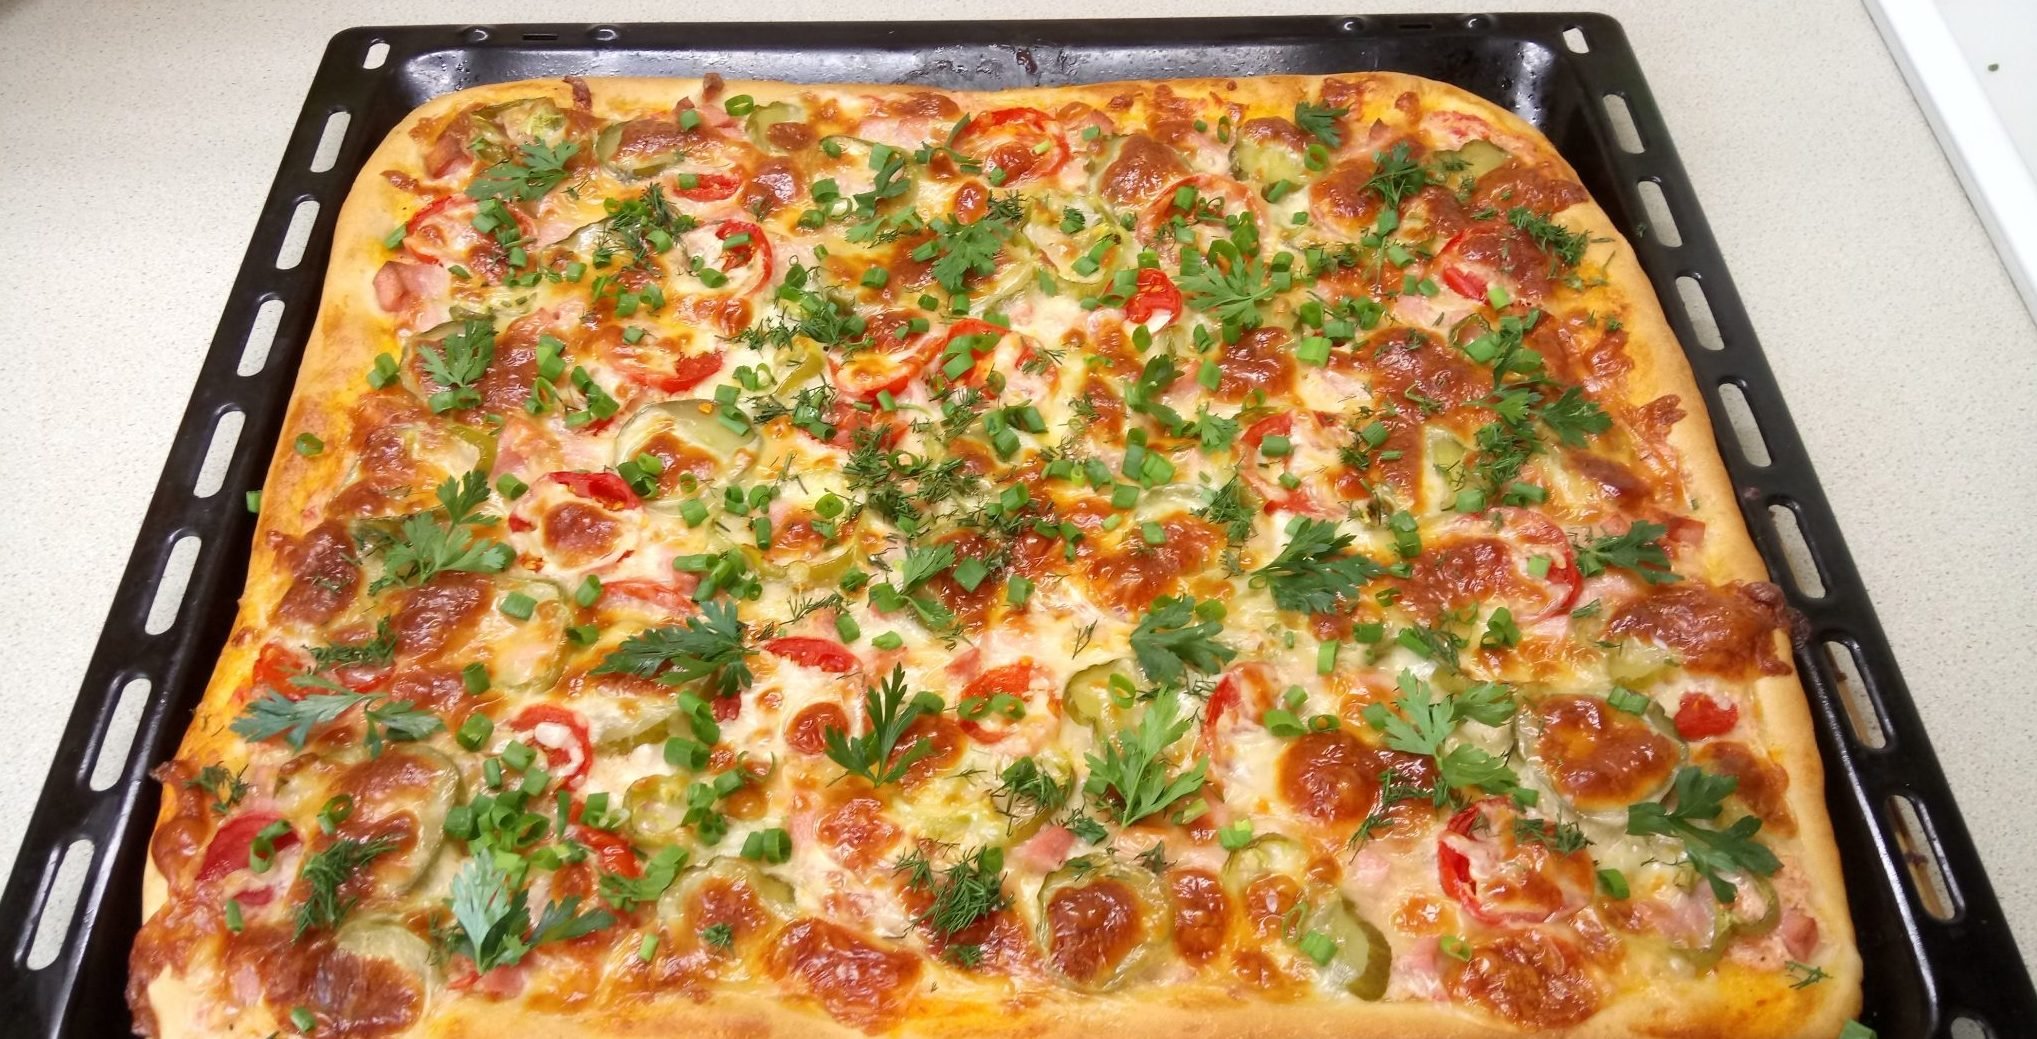 пицца домашняя рецепт приготовления с фото в духовке пошагово фото 23